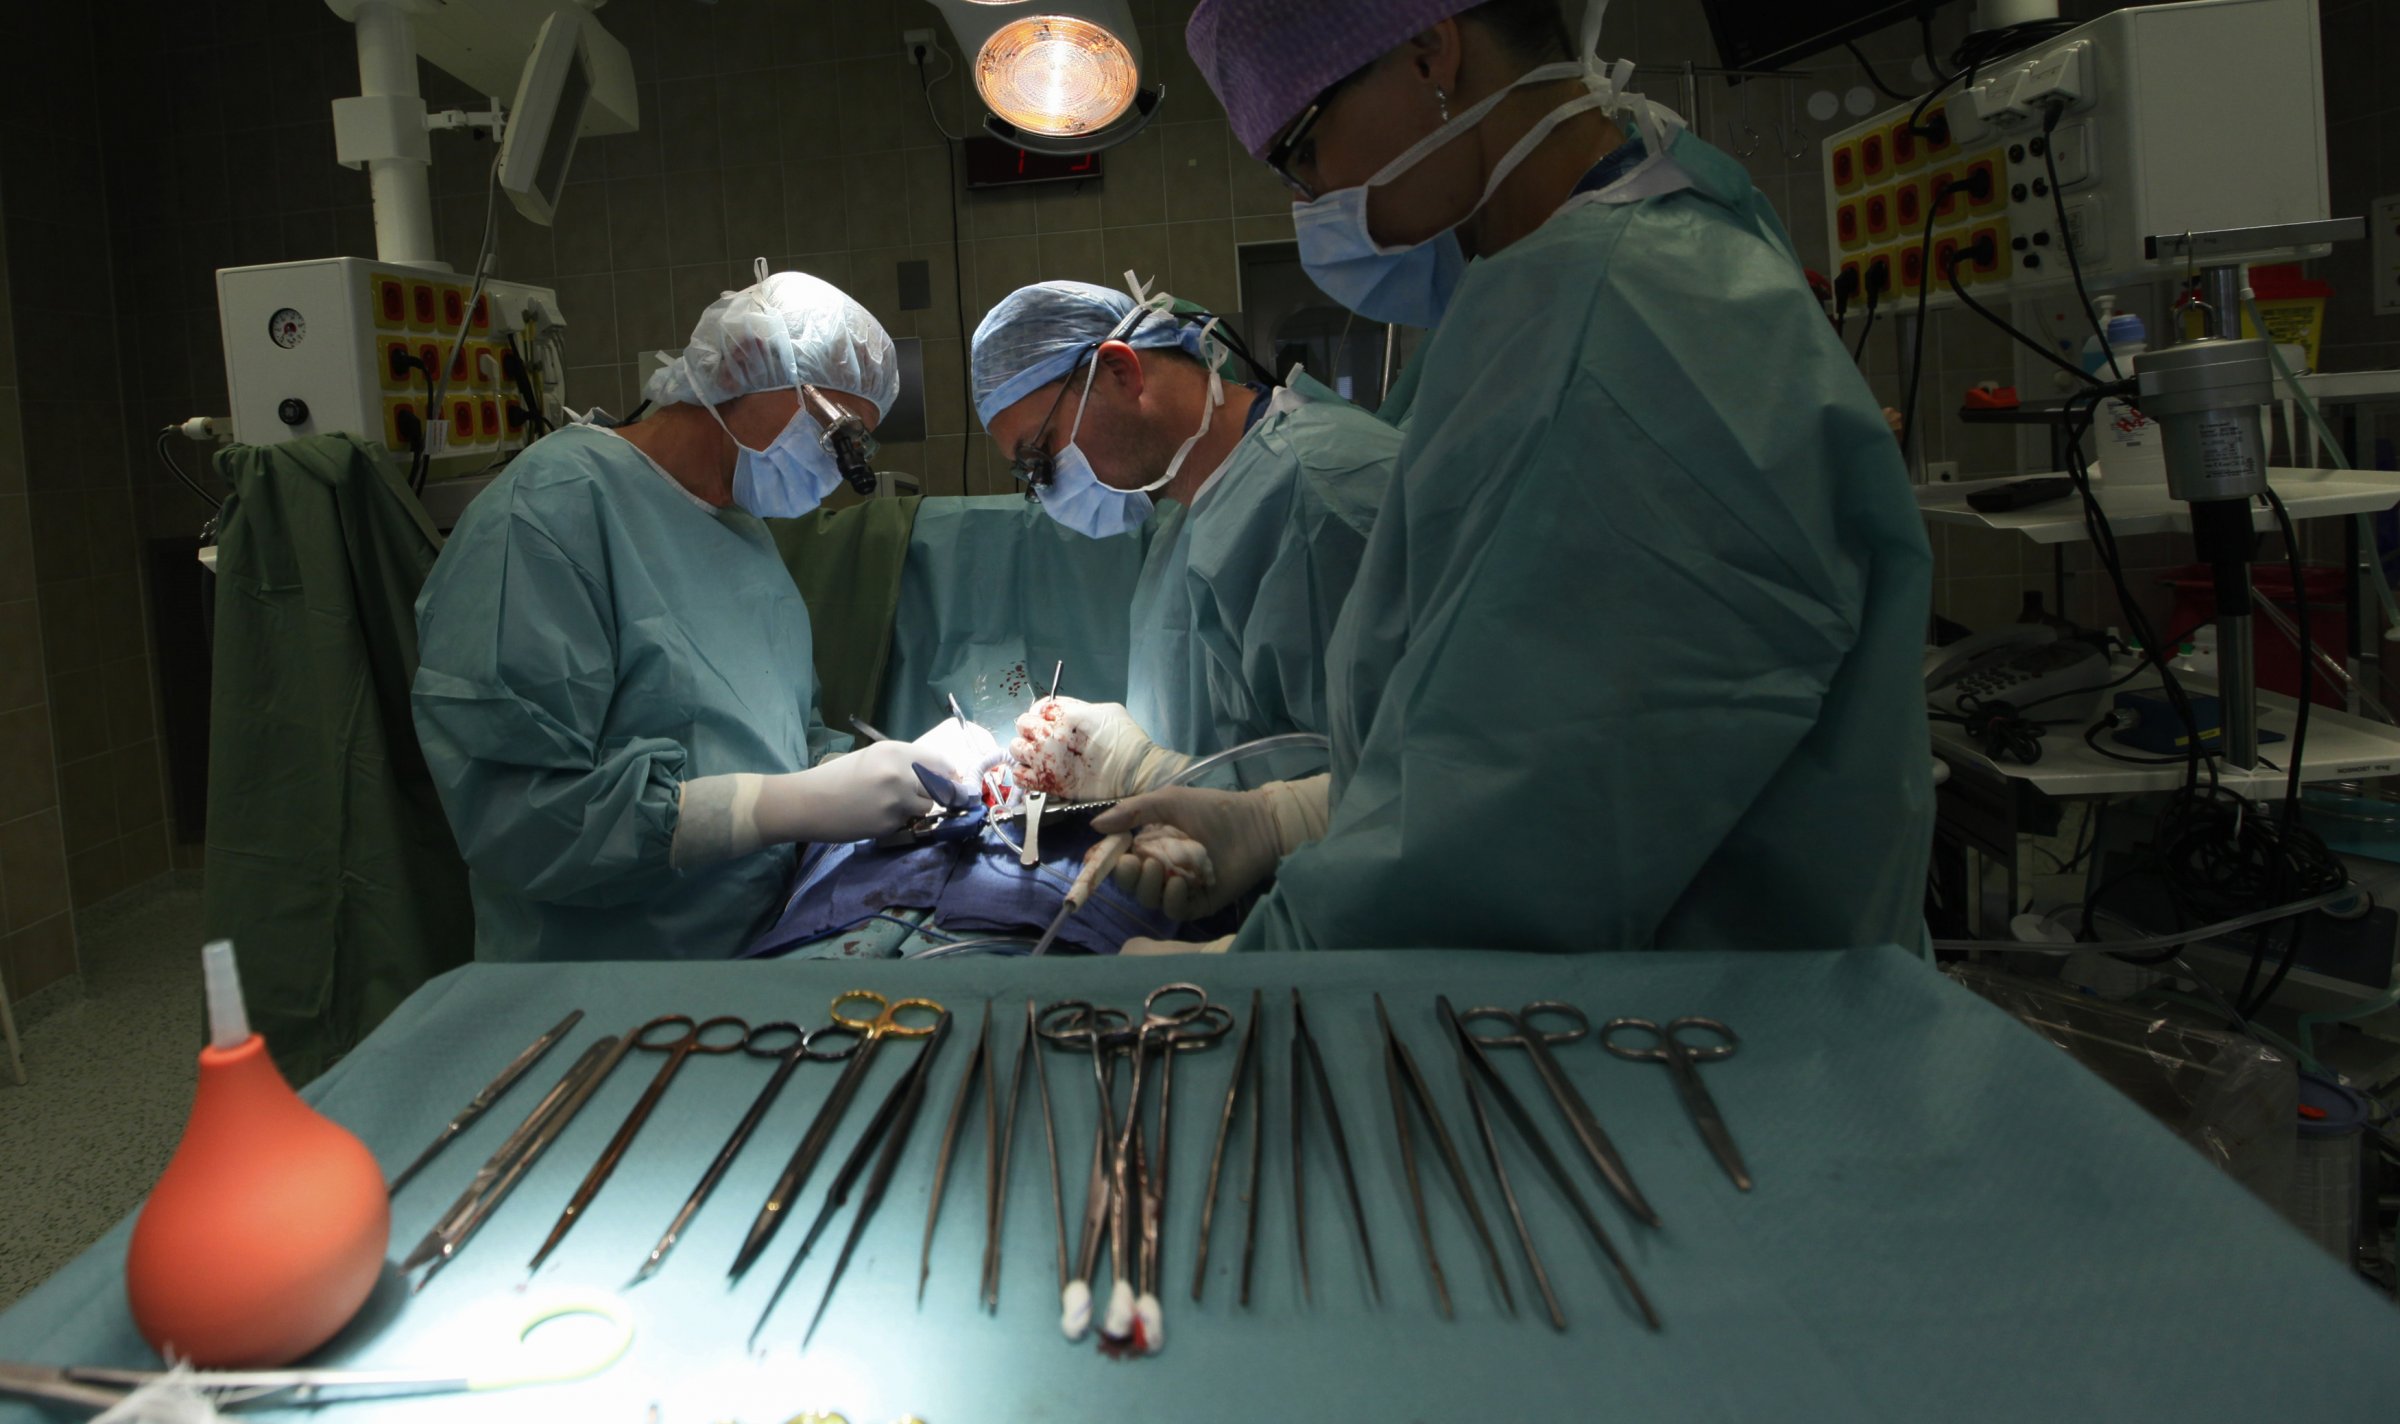 आयुर्वेद चिकित्सकों को सामान्य सर्जरी की अनुमति देने के ख़िलाफ़ आईएमए ने प्रदर्शन किया